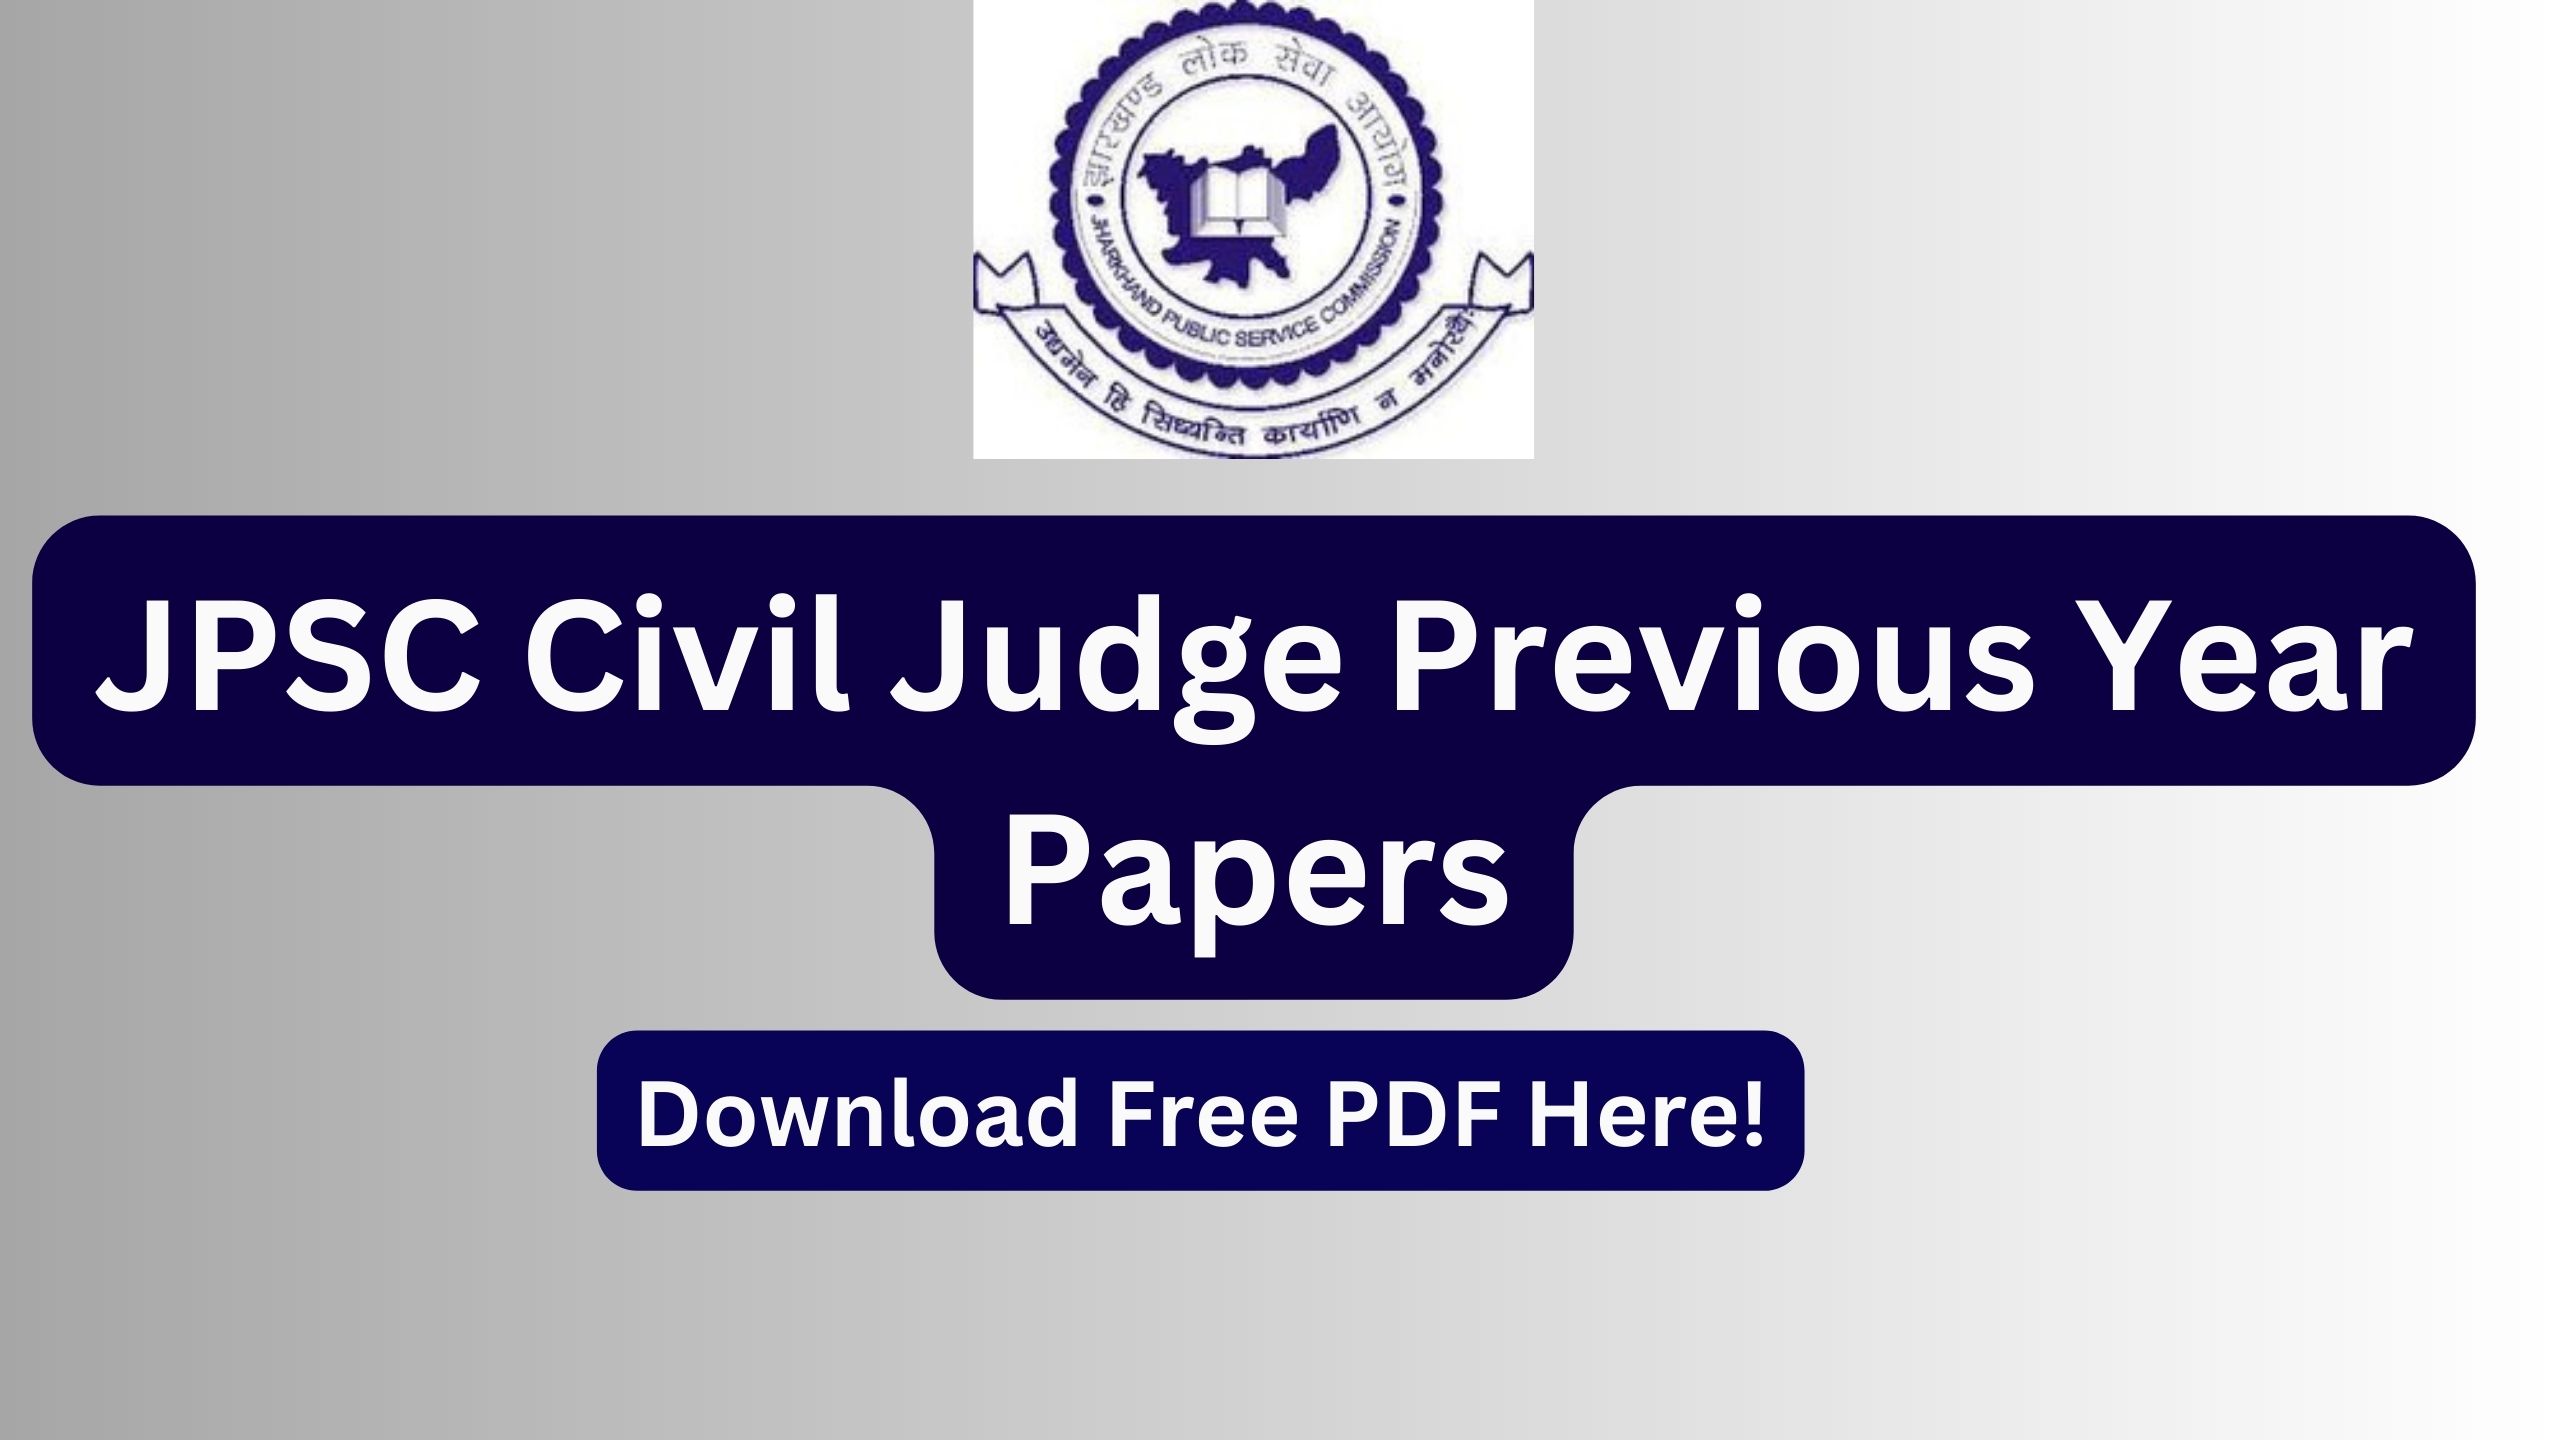 JPSC Civil Judge Previous Year Papers